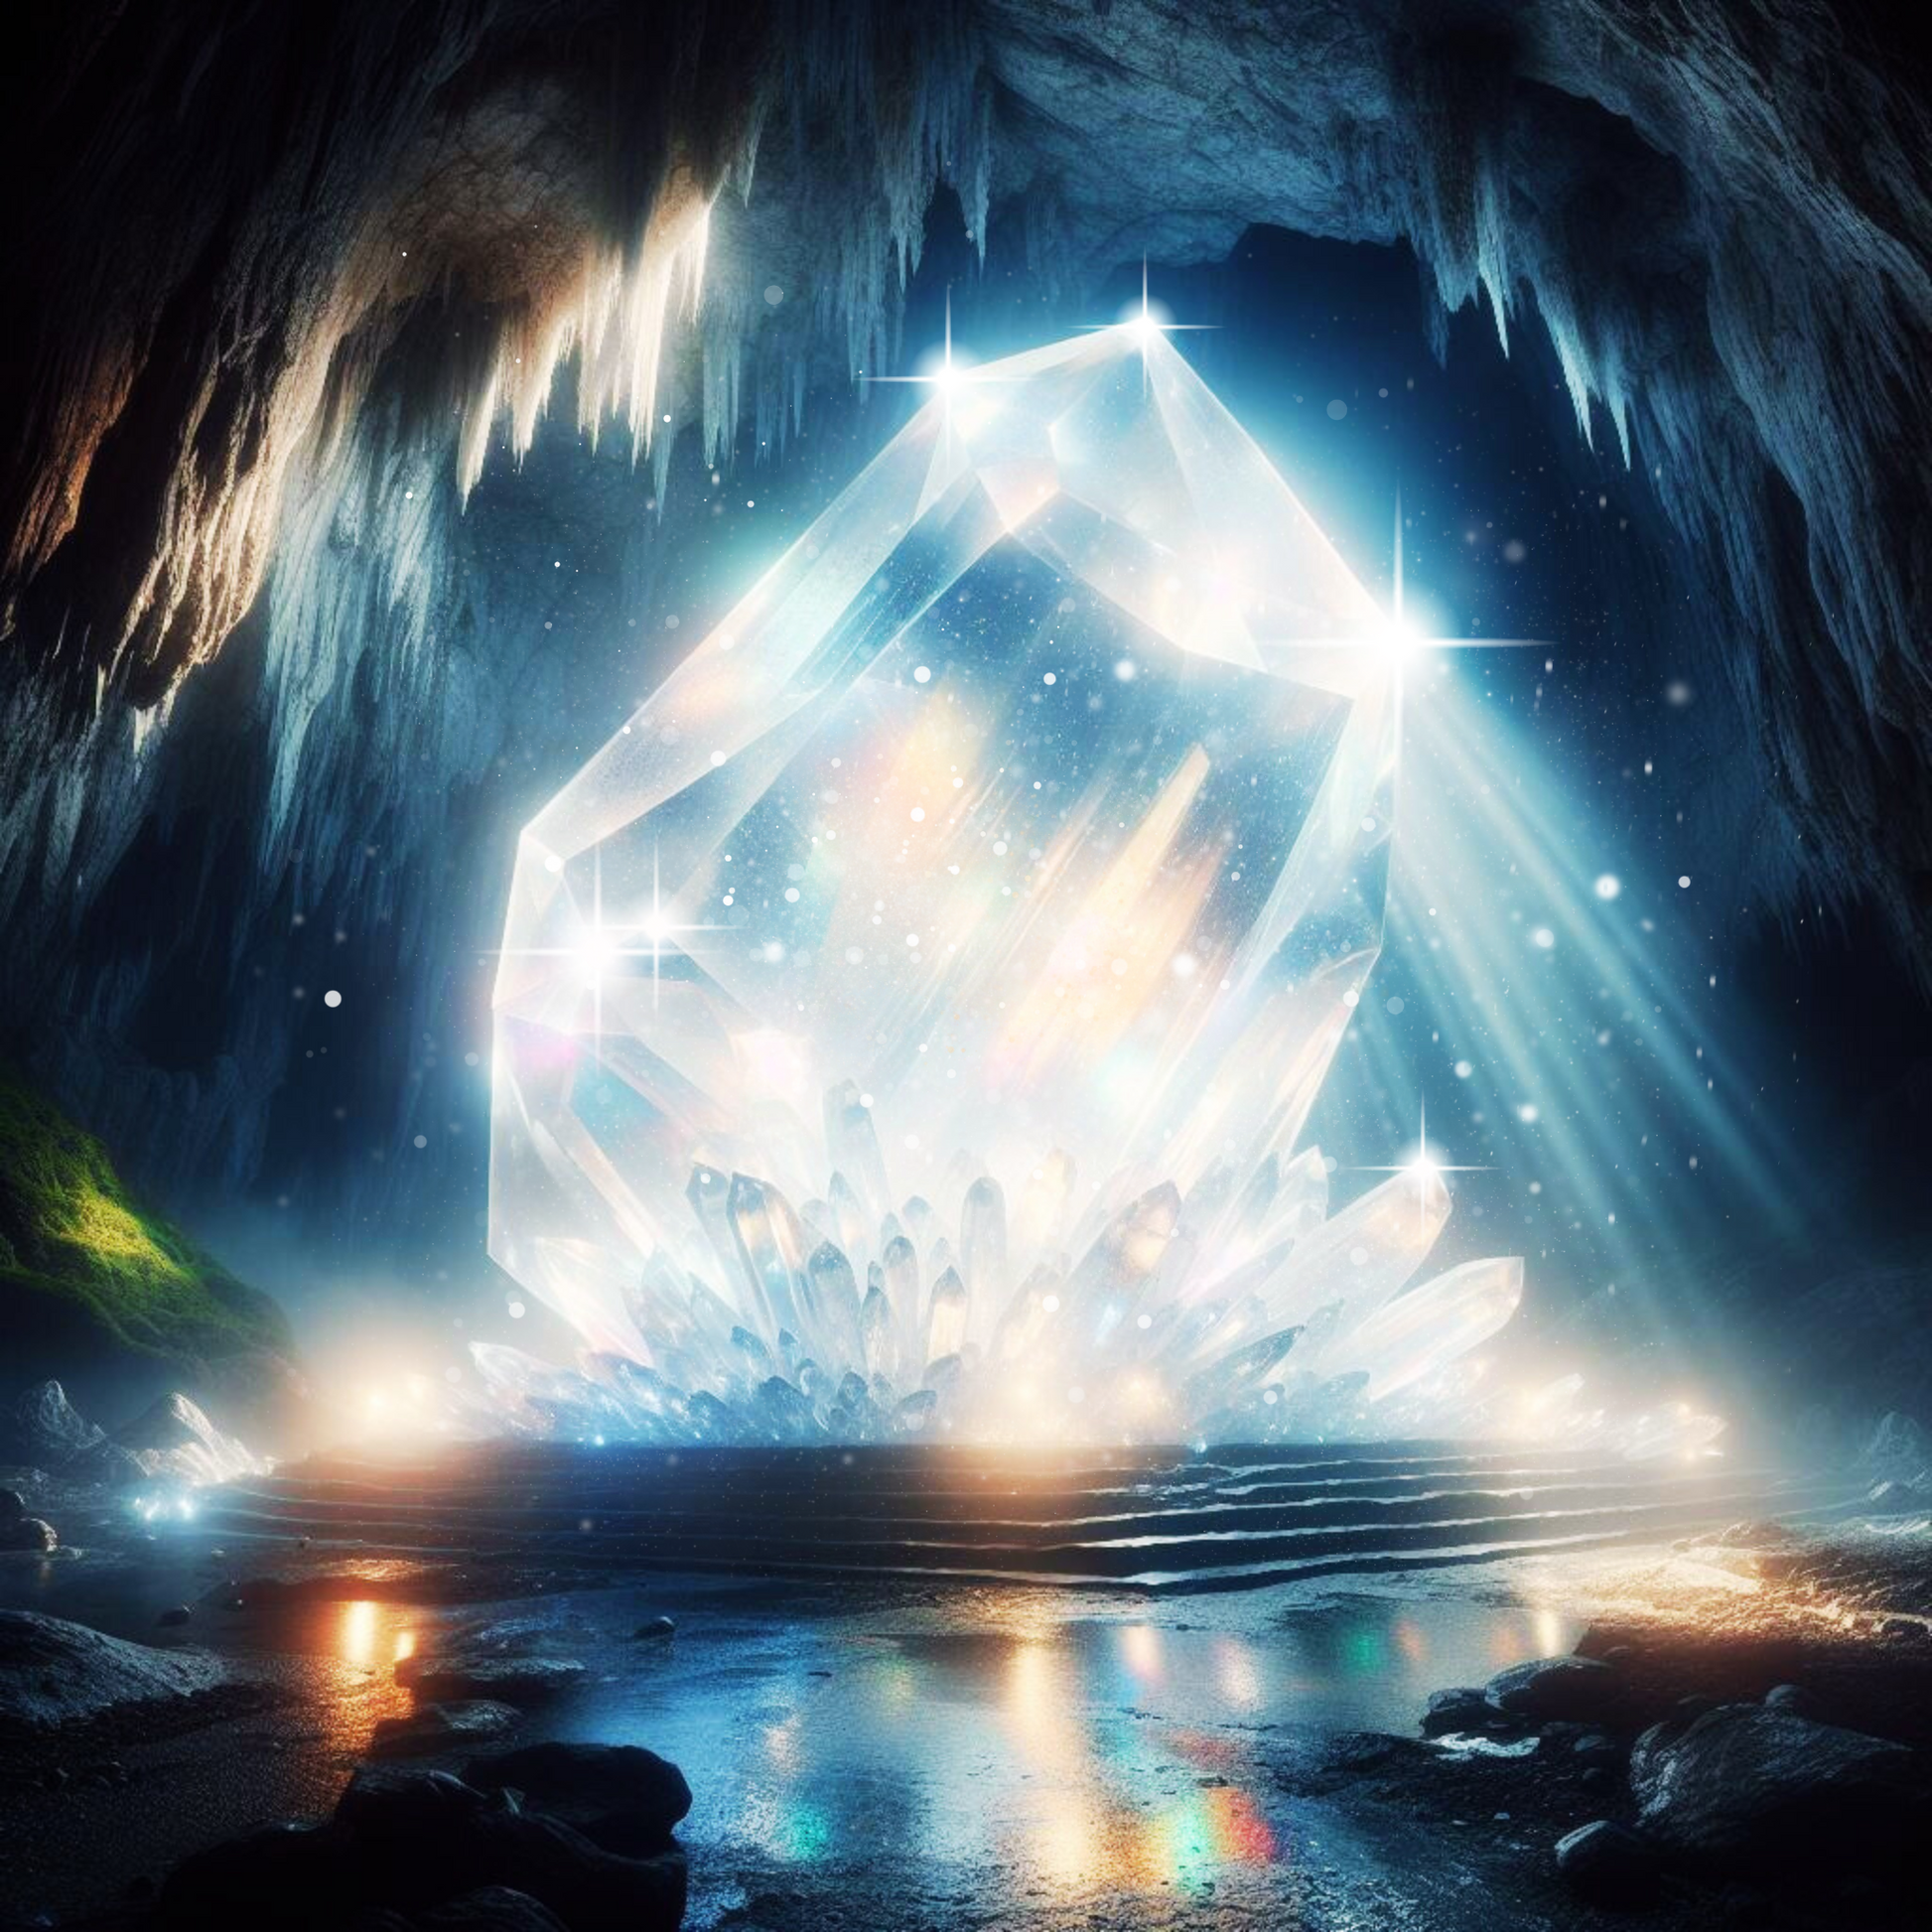 Bergkristall in einer tiefen Höhle.